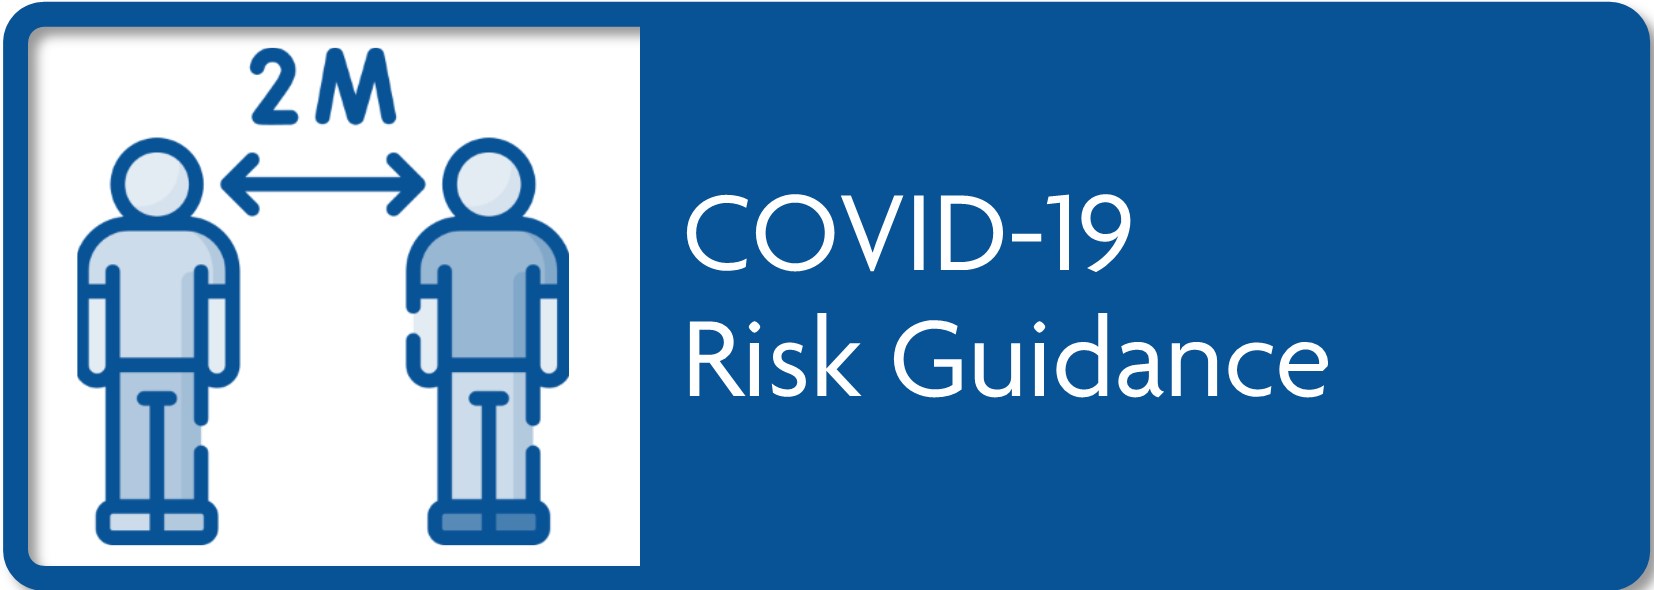 COVID-19 Risk Guidance